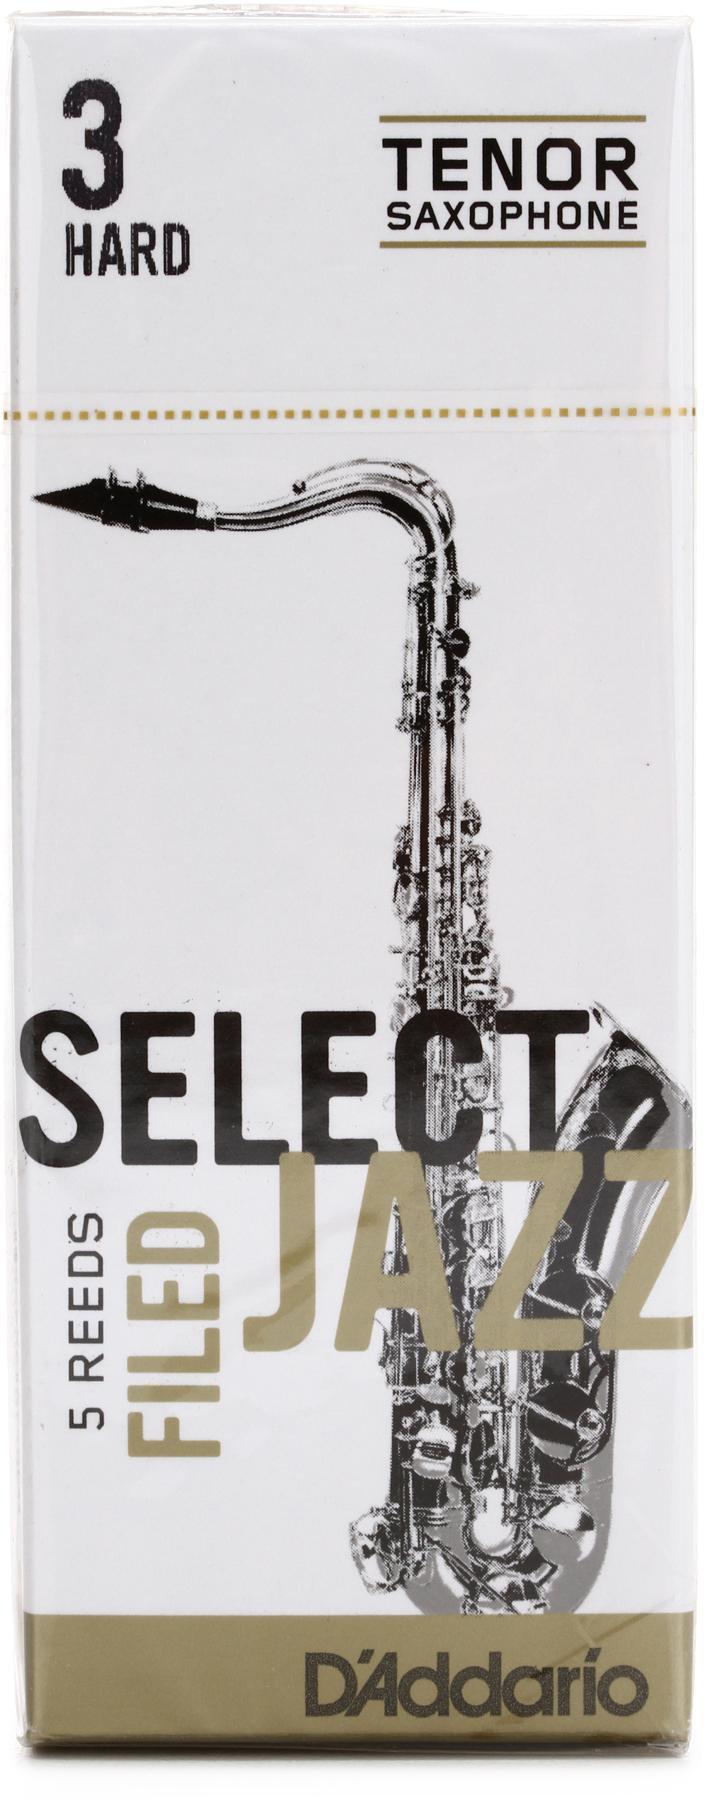 D'Addario - Cañas Select Jazz para Sax Tenor, 5 Piezas Medida: 3H Mod.RSF05TSX3H_28